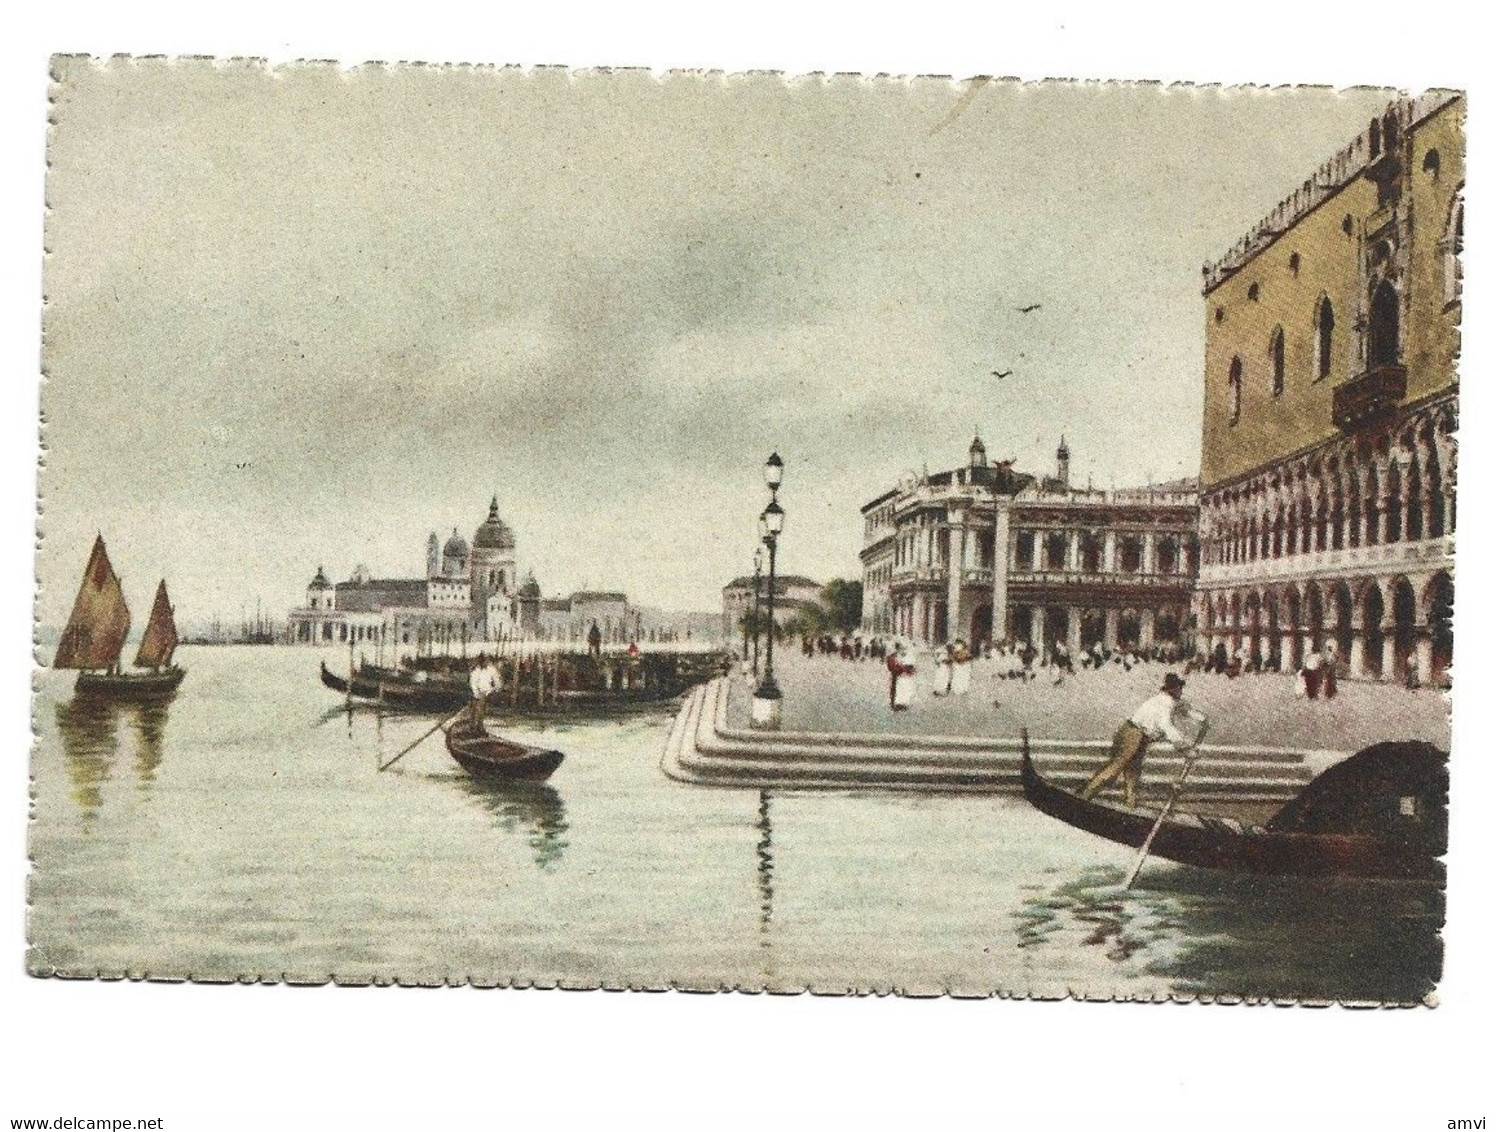 22-1 - 424 Venezia Il Molo Paire 10 Centimi - Venezia (Venice)